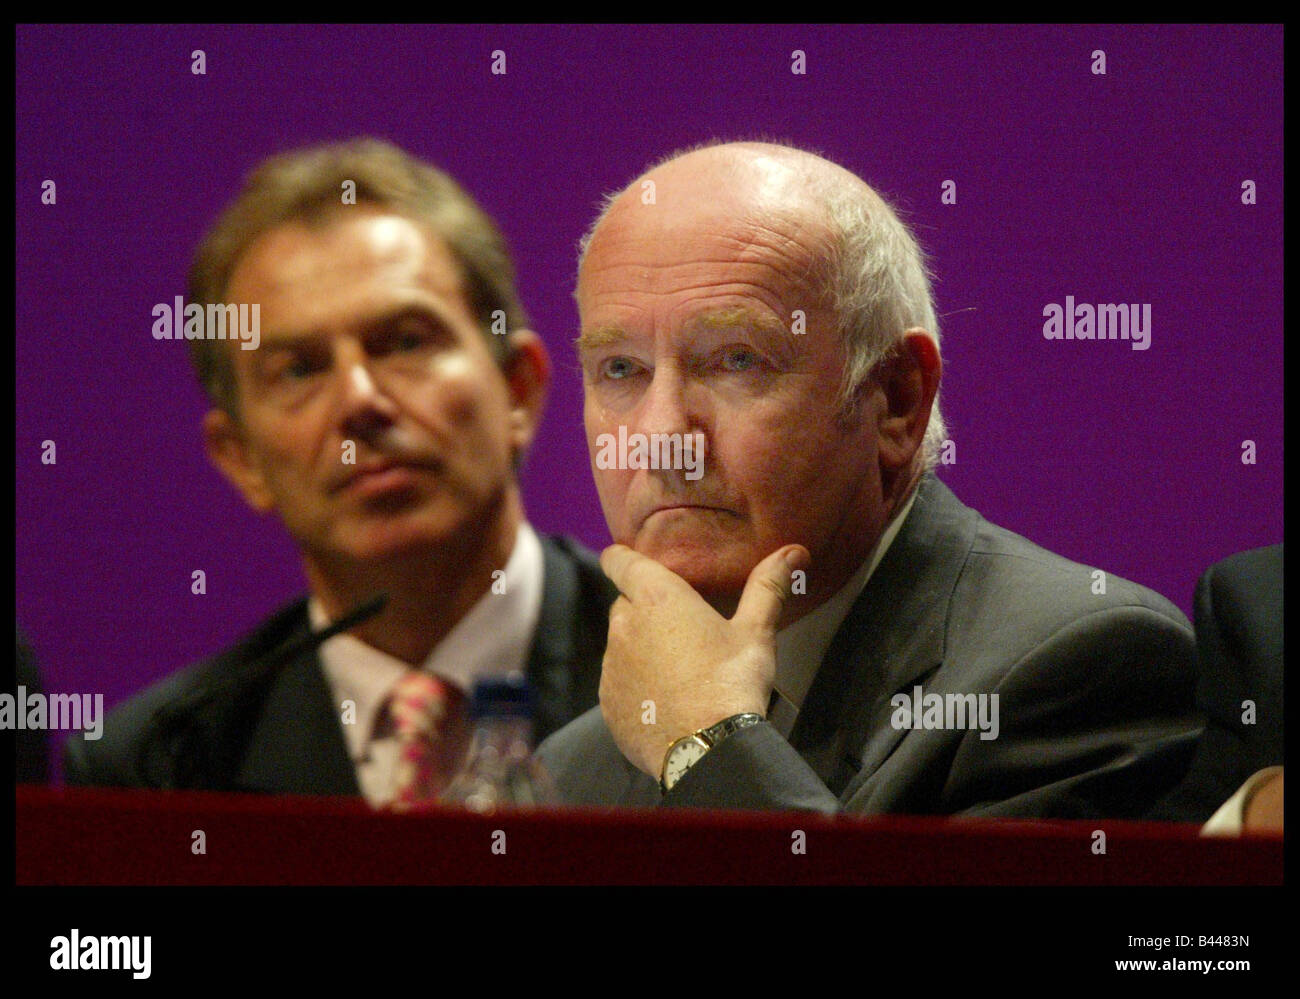 La manodopera s Segretaria di salute John Reid e PM Tony Blair in occasione del congresso del partito laburista la Bournemouth Ottobre 2003 Foto Stock